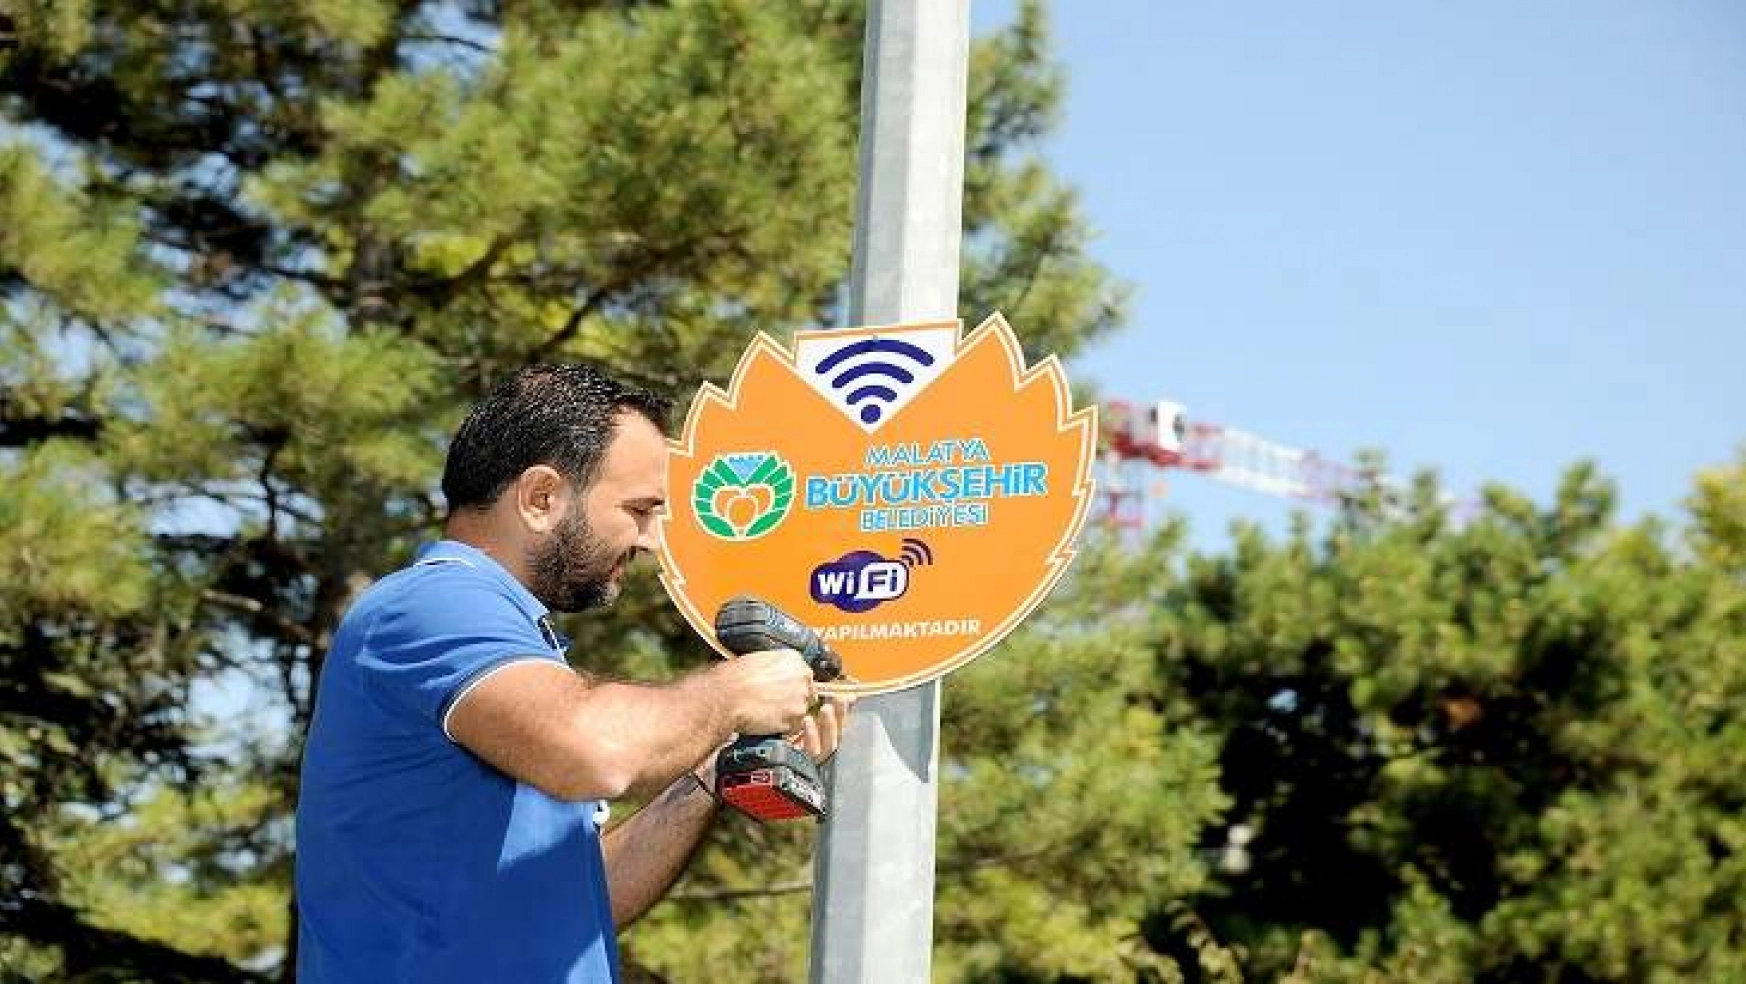 Büyükşehir Belediyesinden Ücretsiz Wi-Fi Hizmeti